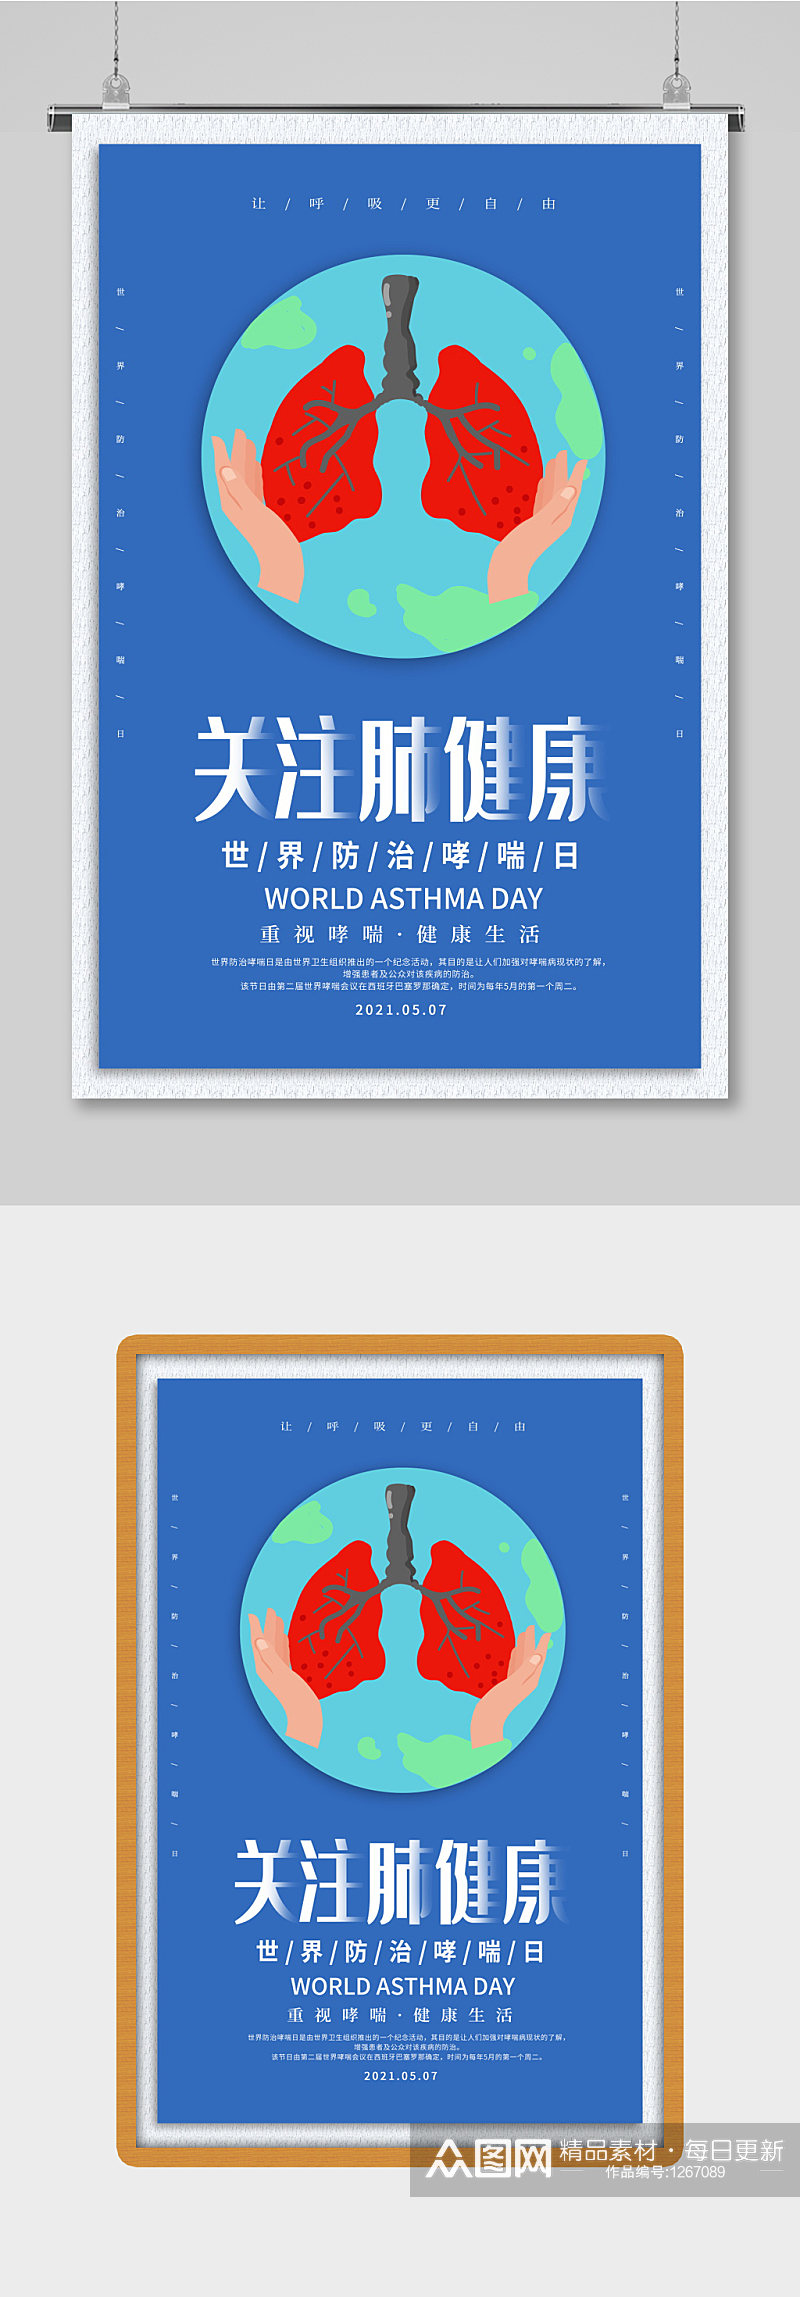 原创手绘世界防治哮喘日海报素材